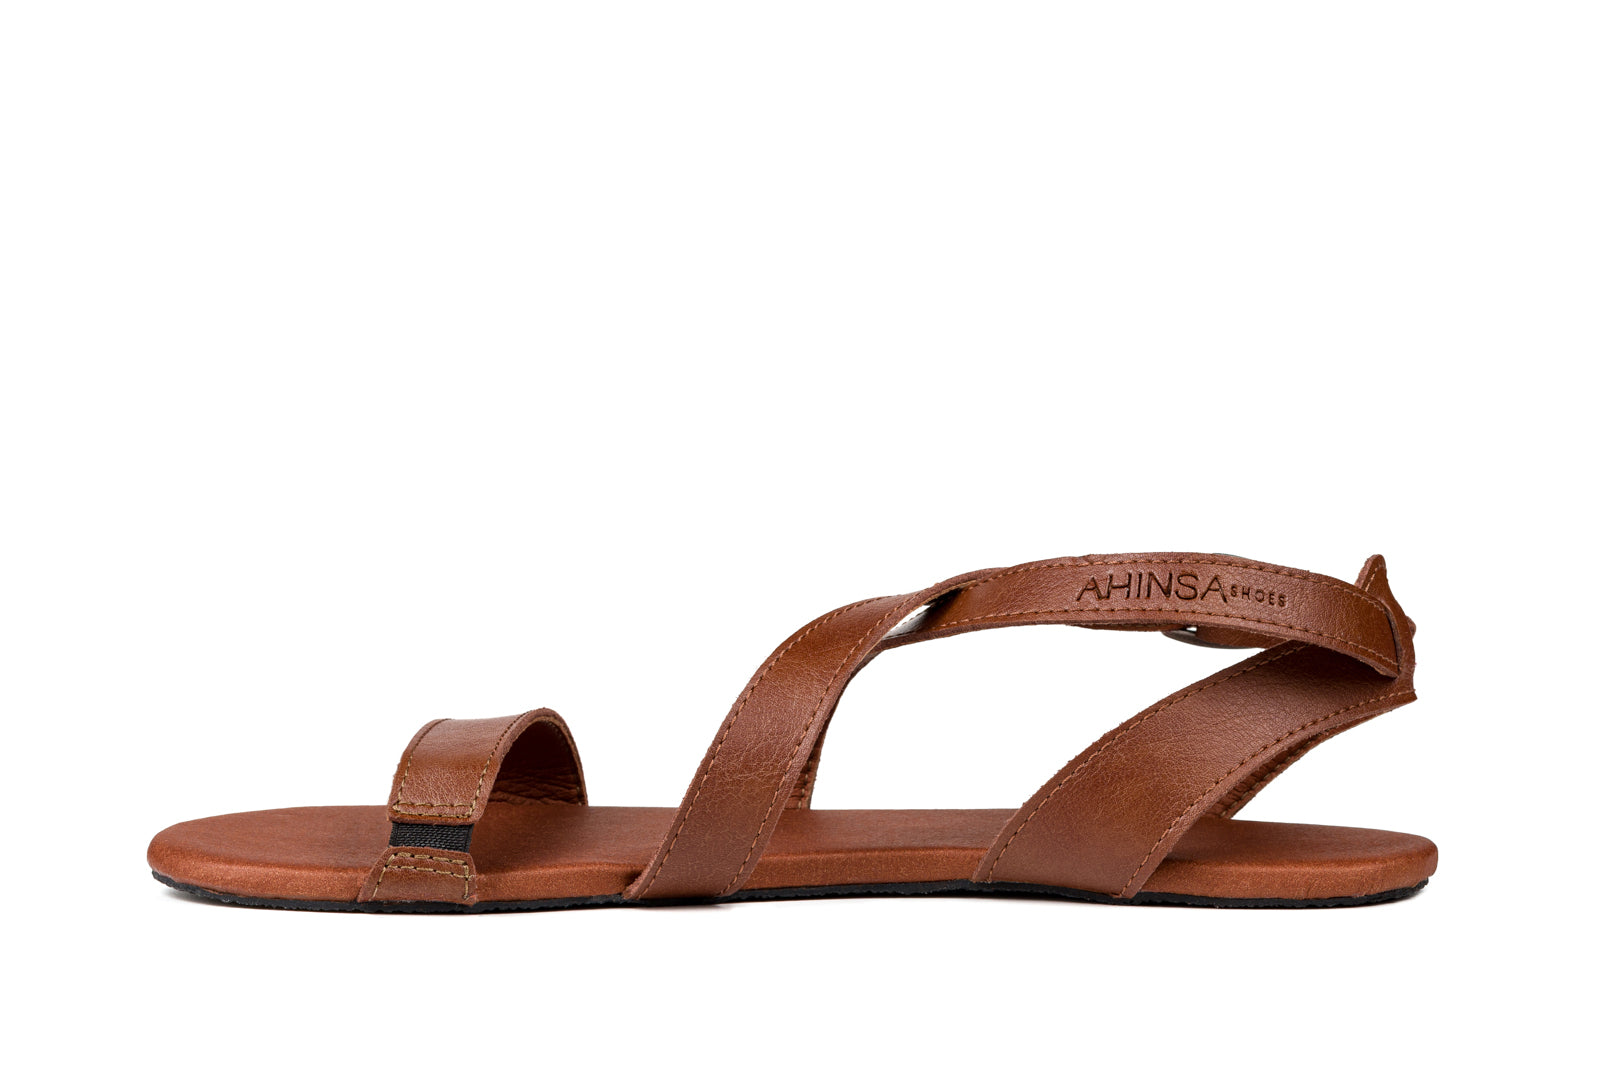 Ahinsa Hava barfods sandaler til kvinder i farven brown, inderside